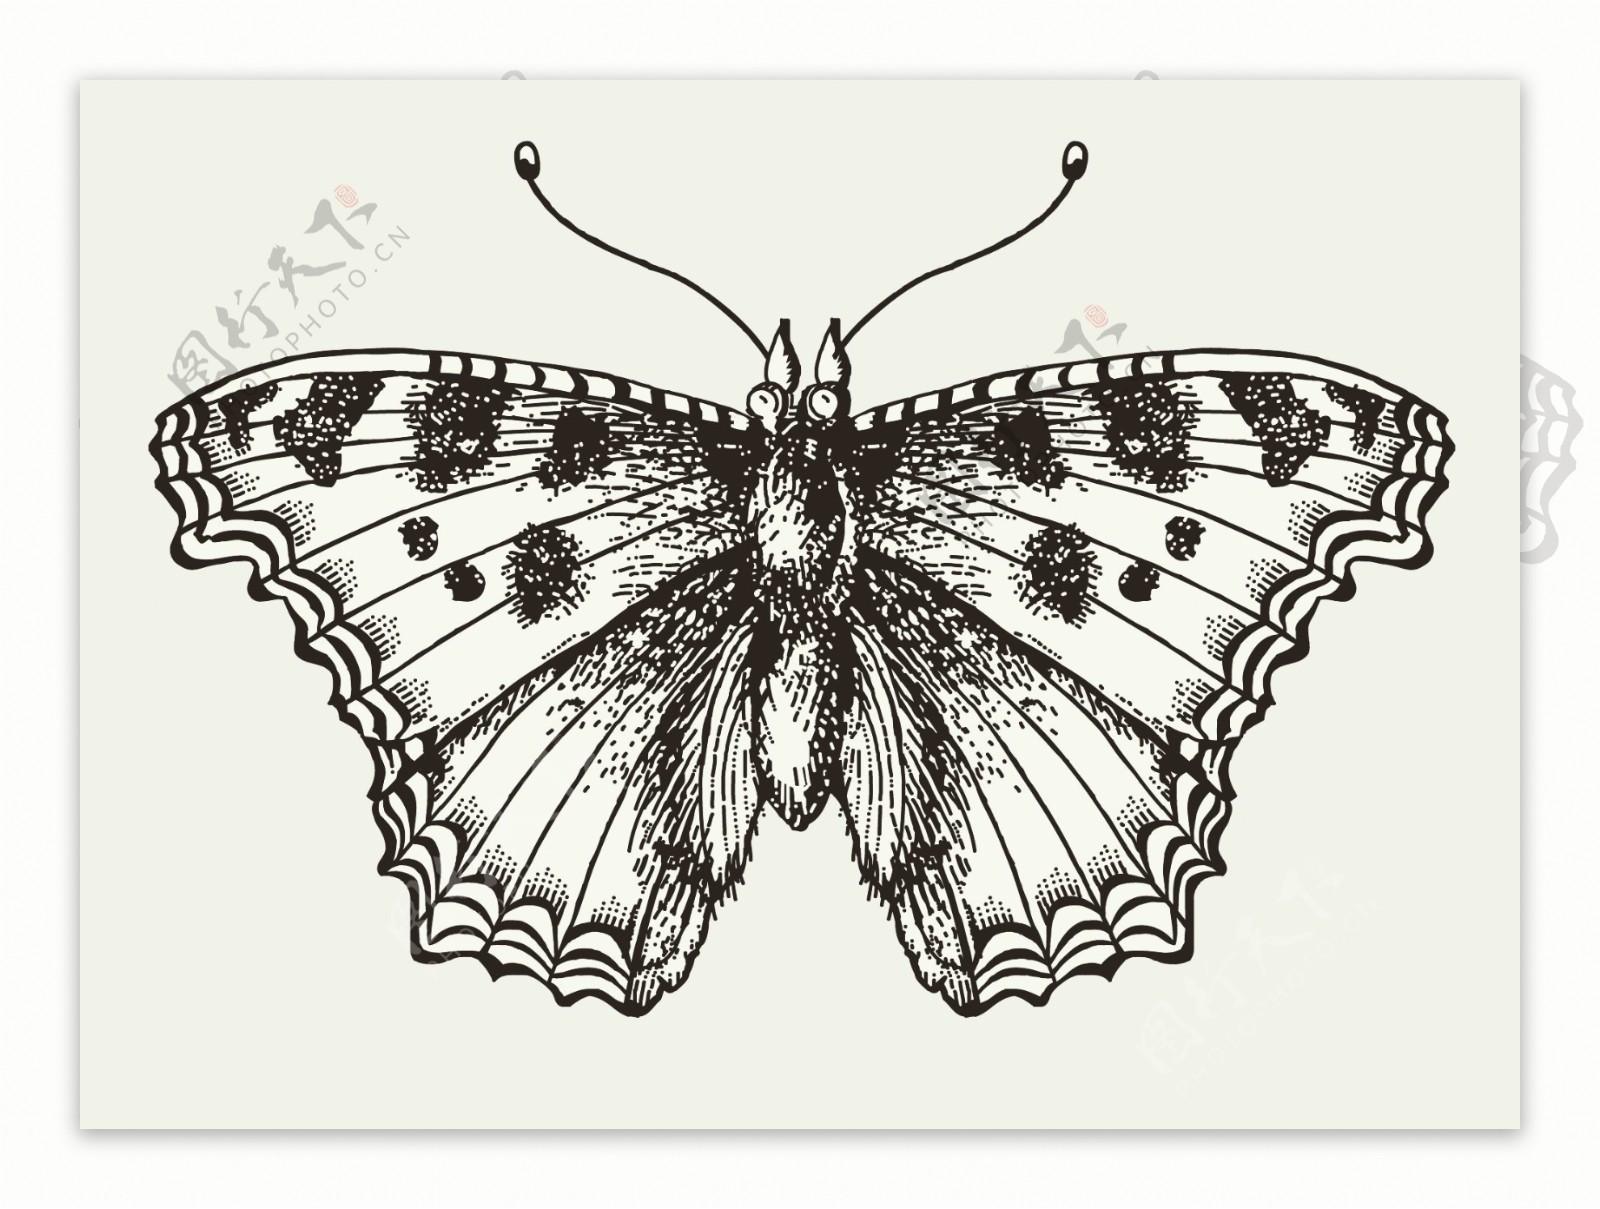 黑白手绘蝴蝶图案